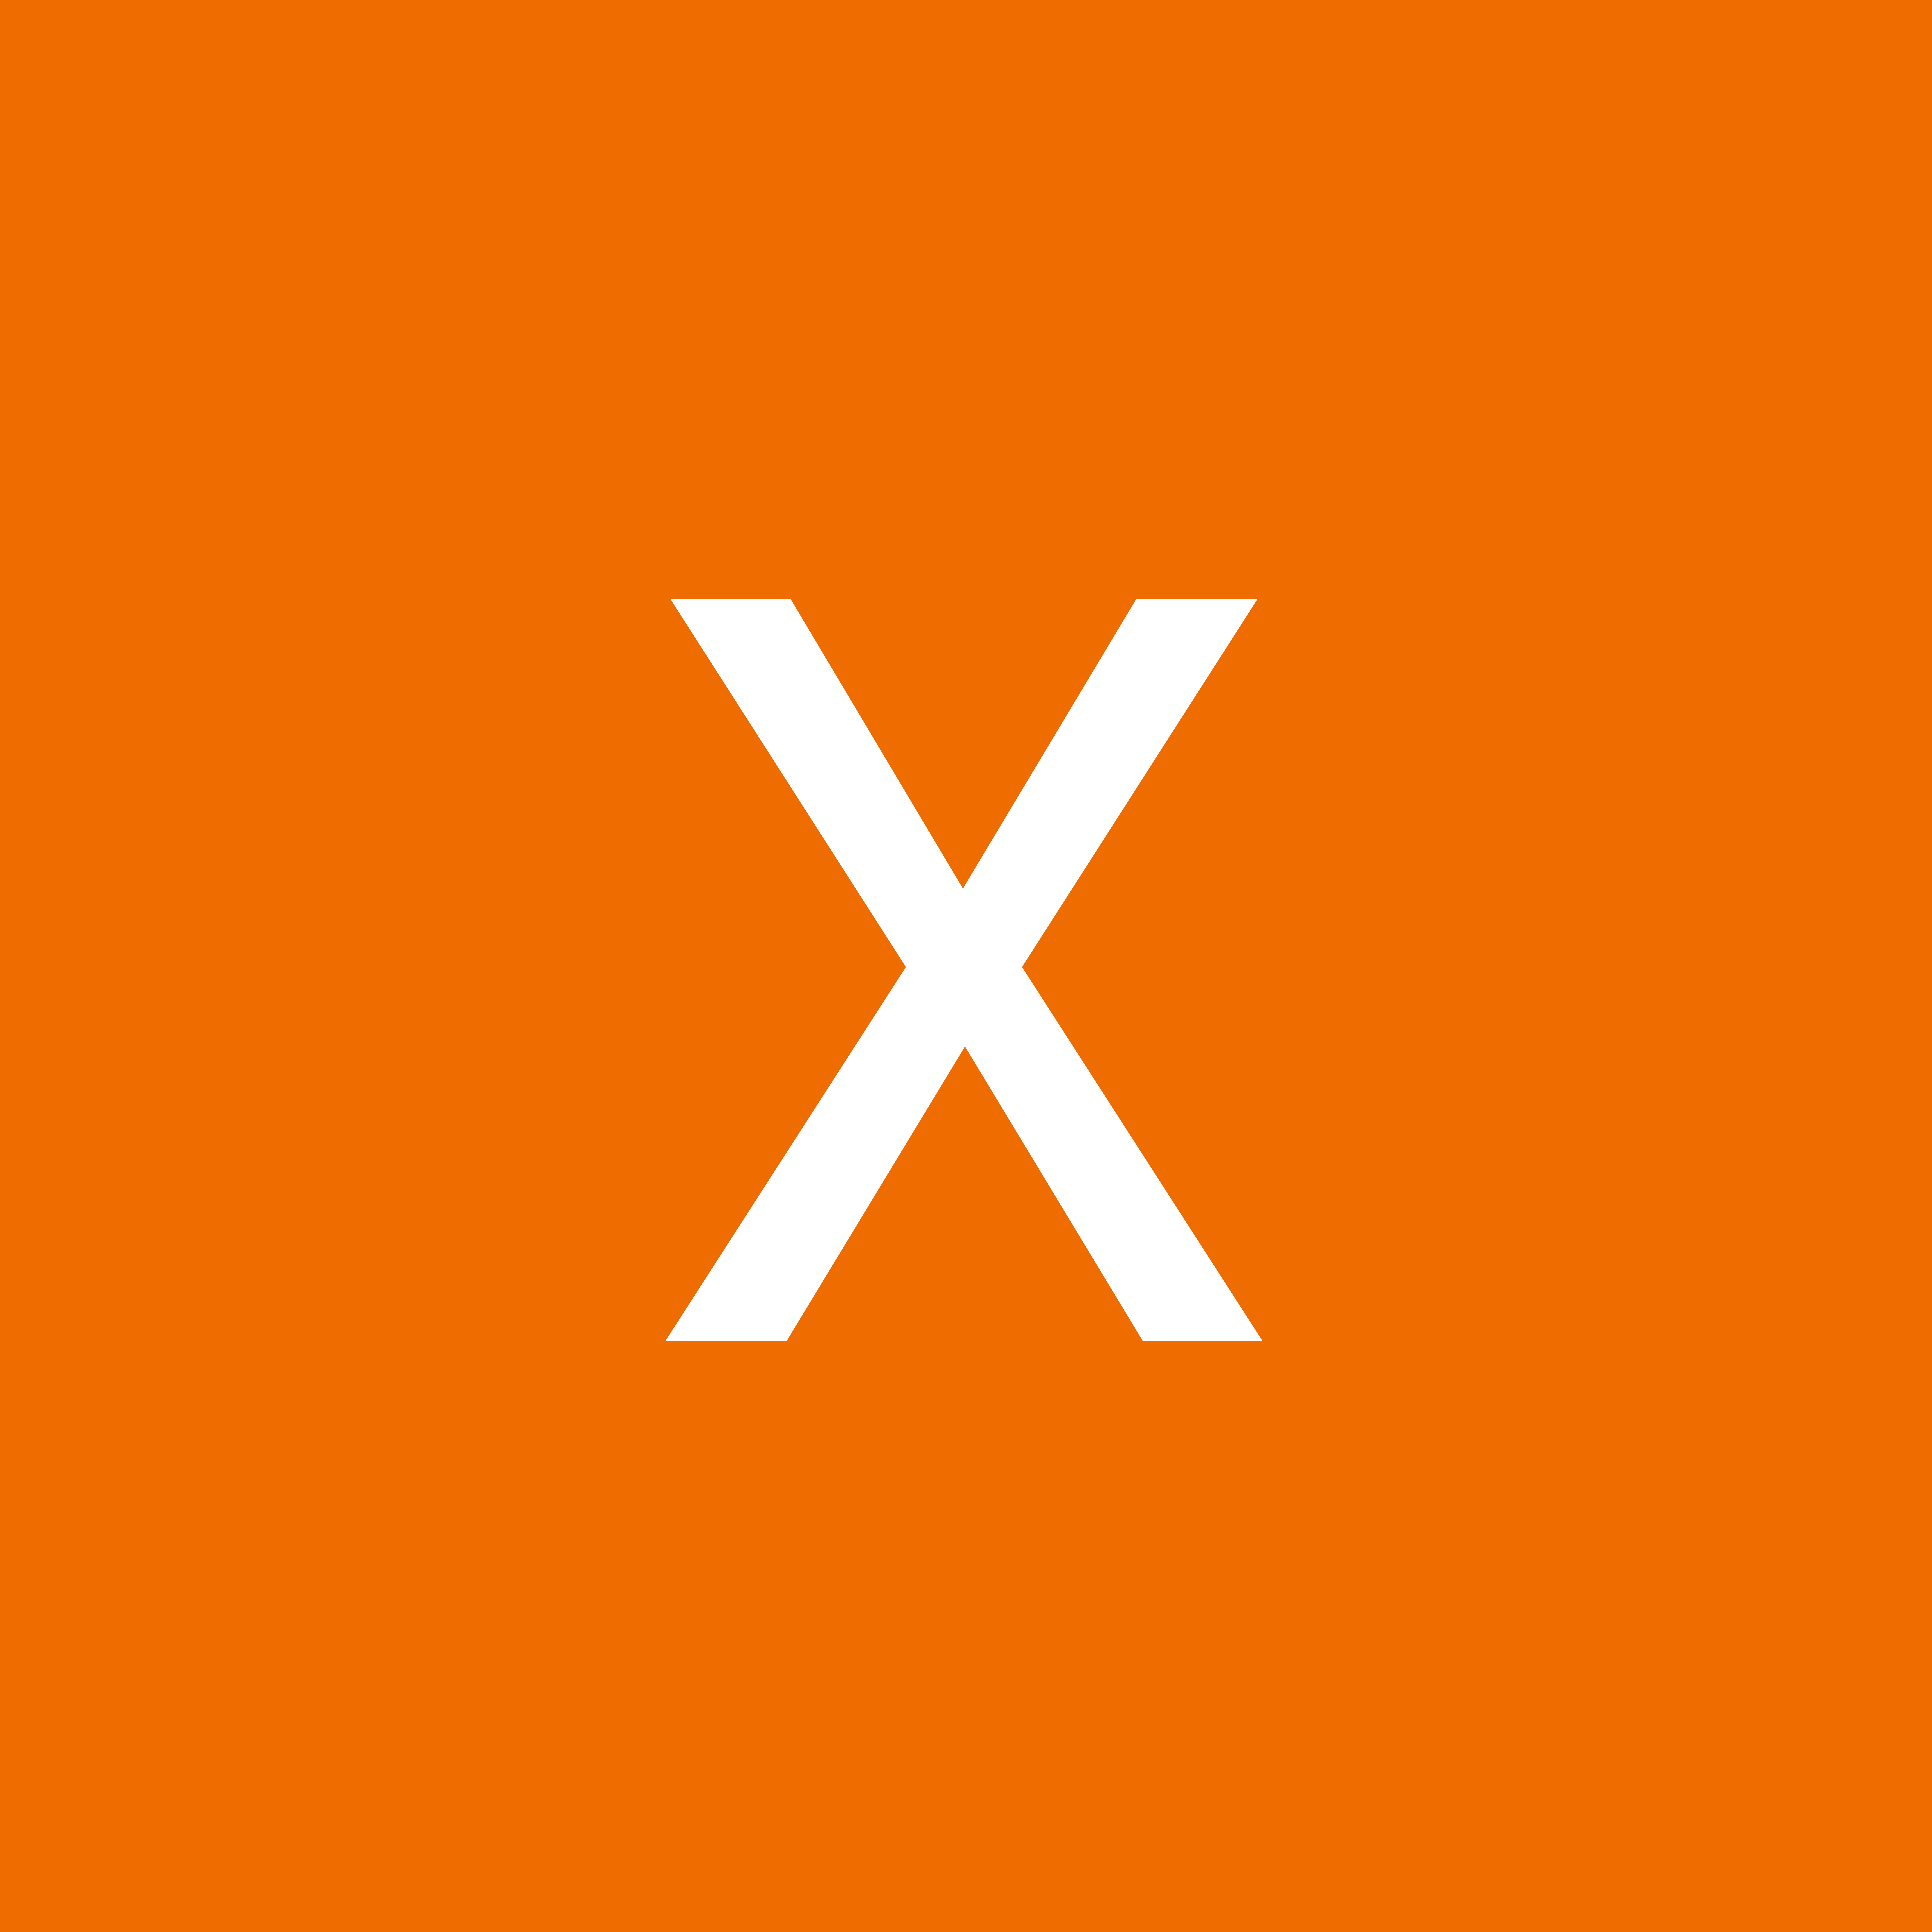 XFIRLOX